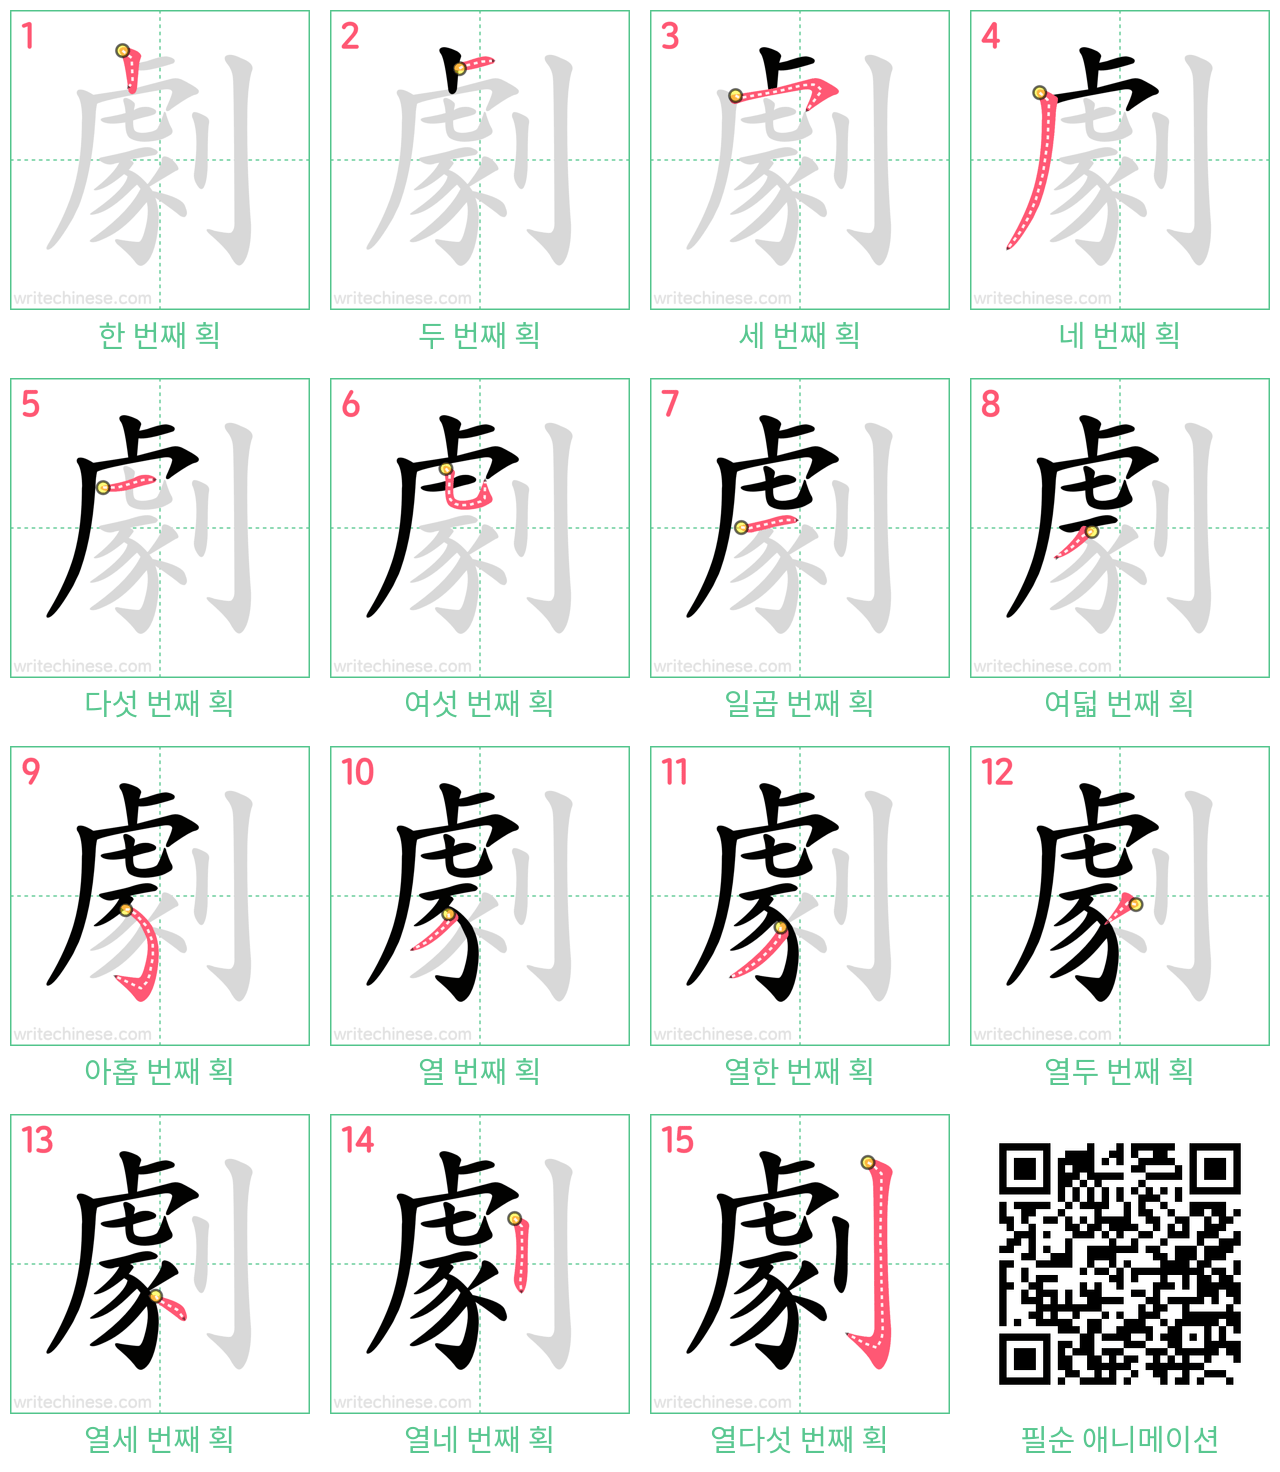 劇 step-by-step stroke order diagrams